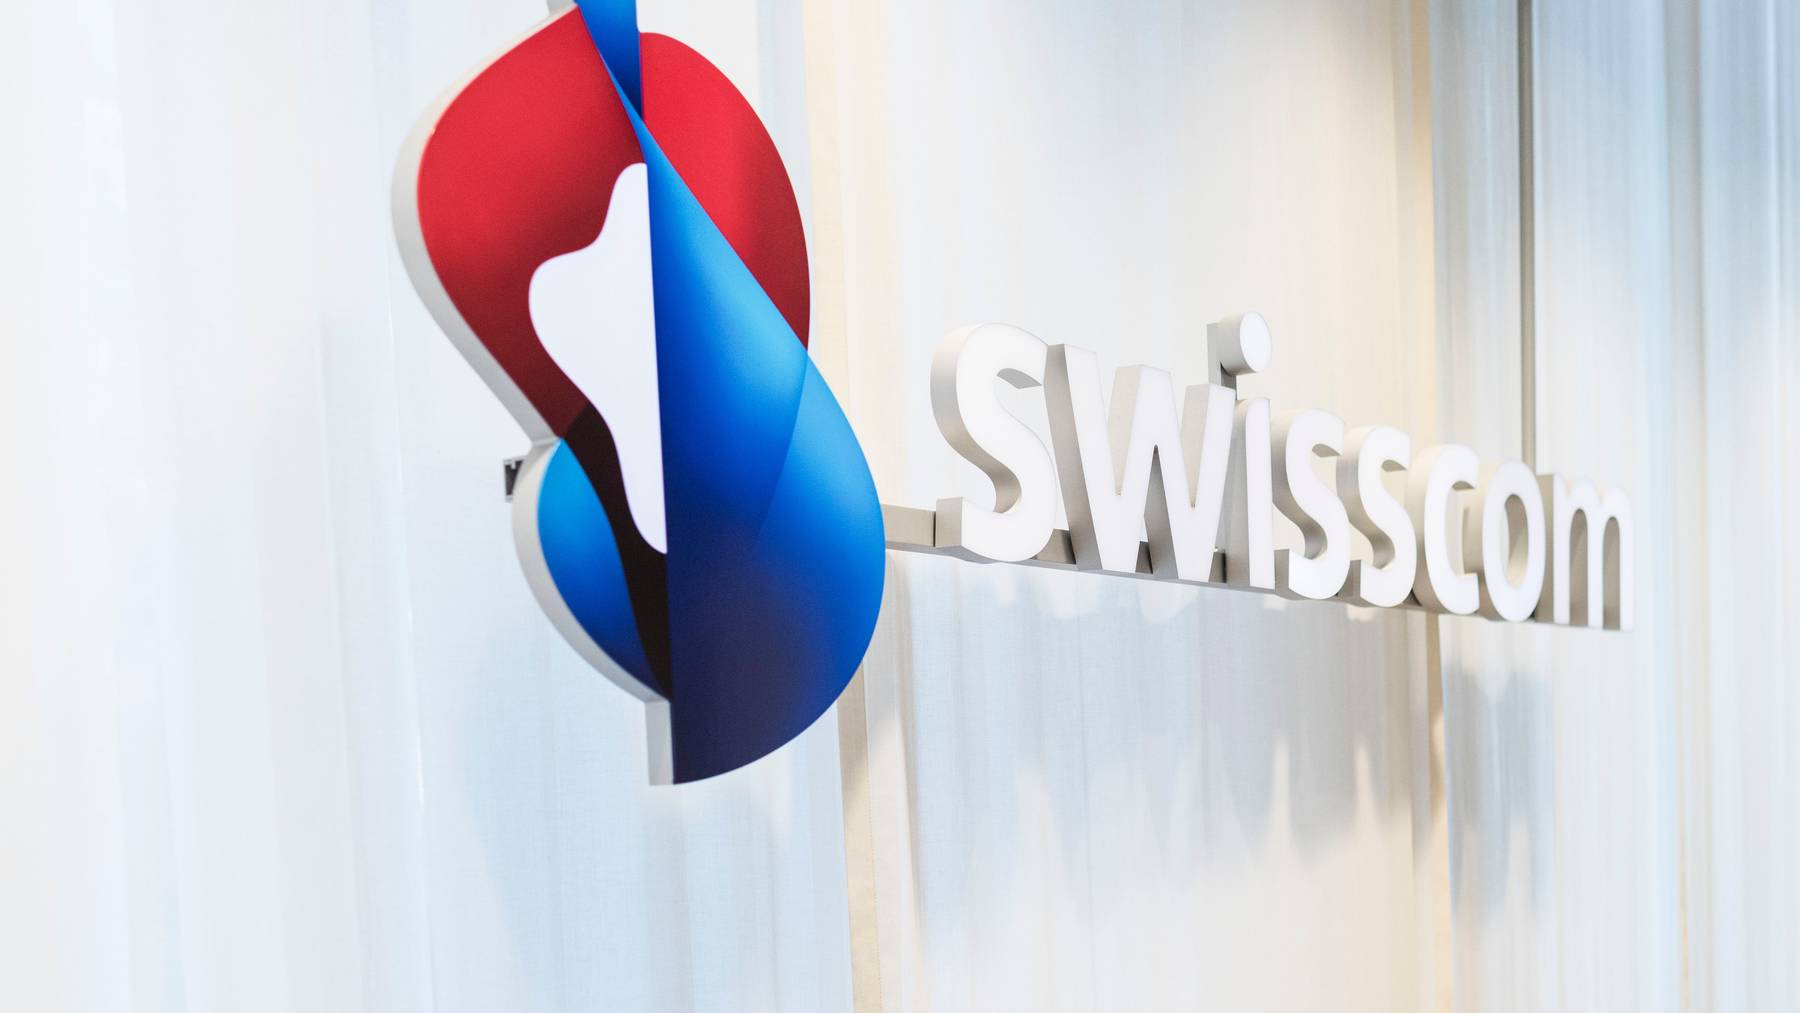 Swisscom habe mit seiner Preispolitik bei ADSL-Diensten den Wettbewerb rechtswidrig behindert, meint Sunrise (Symbolbild)